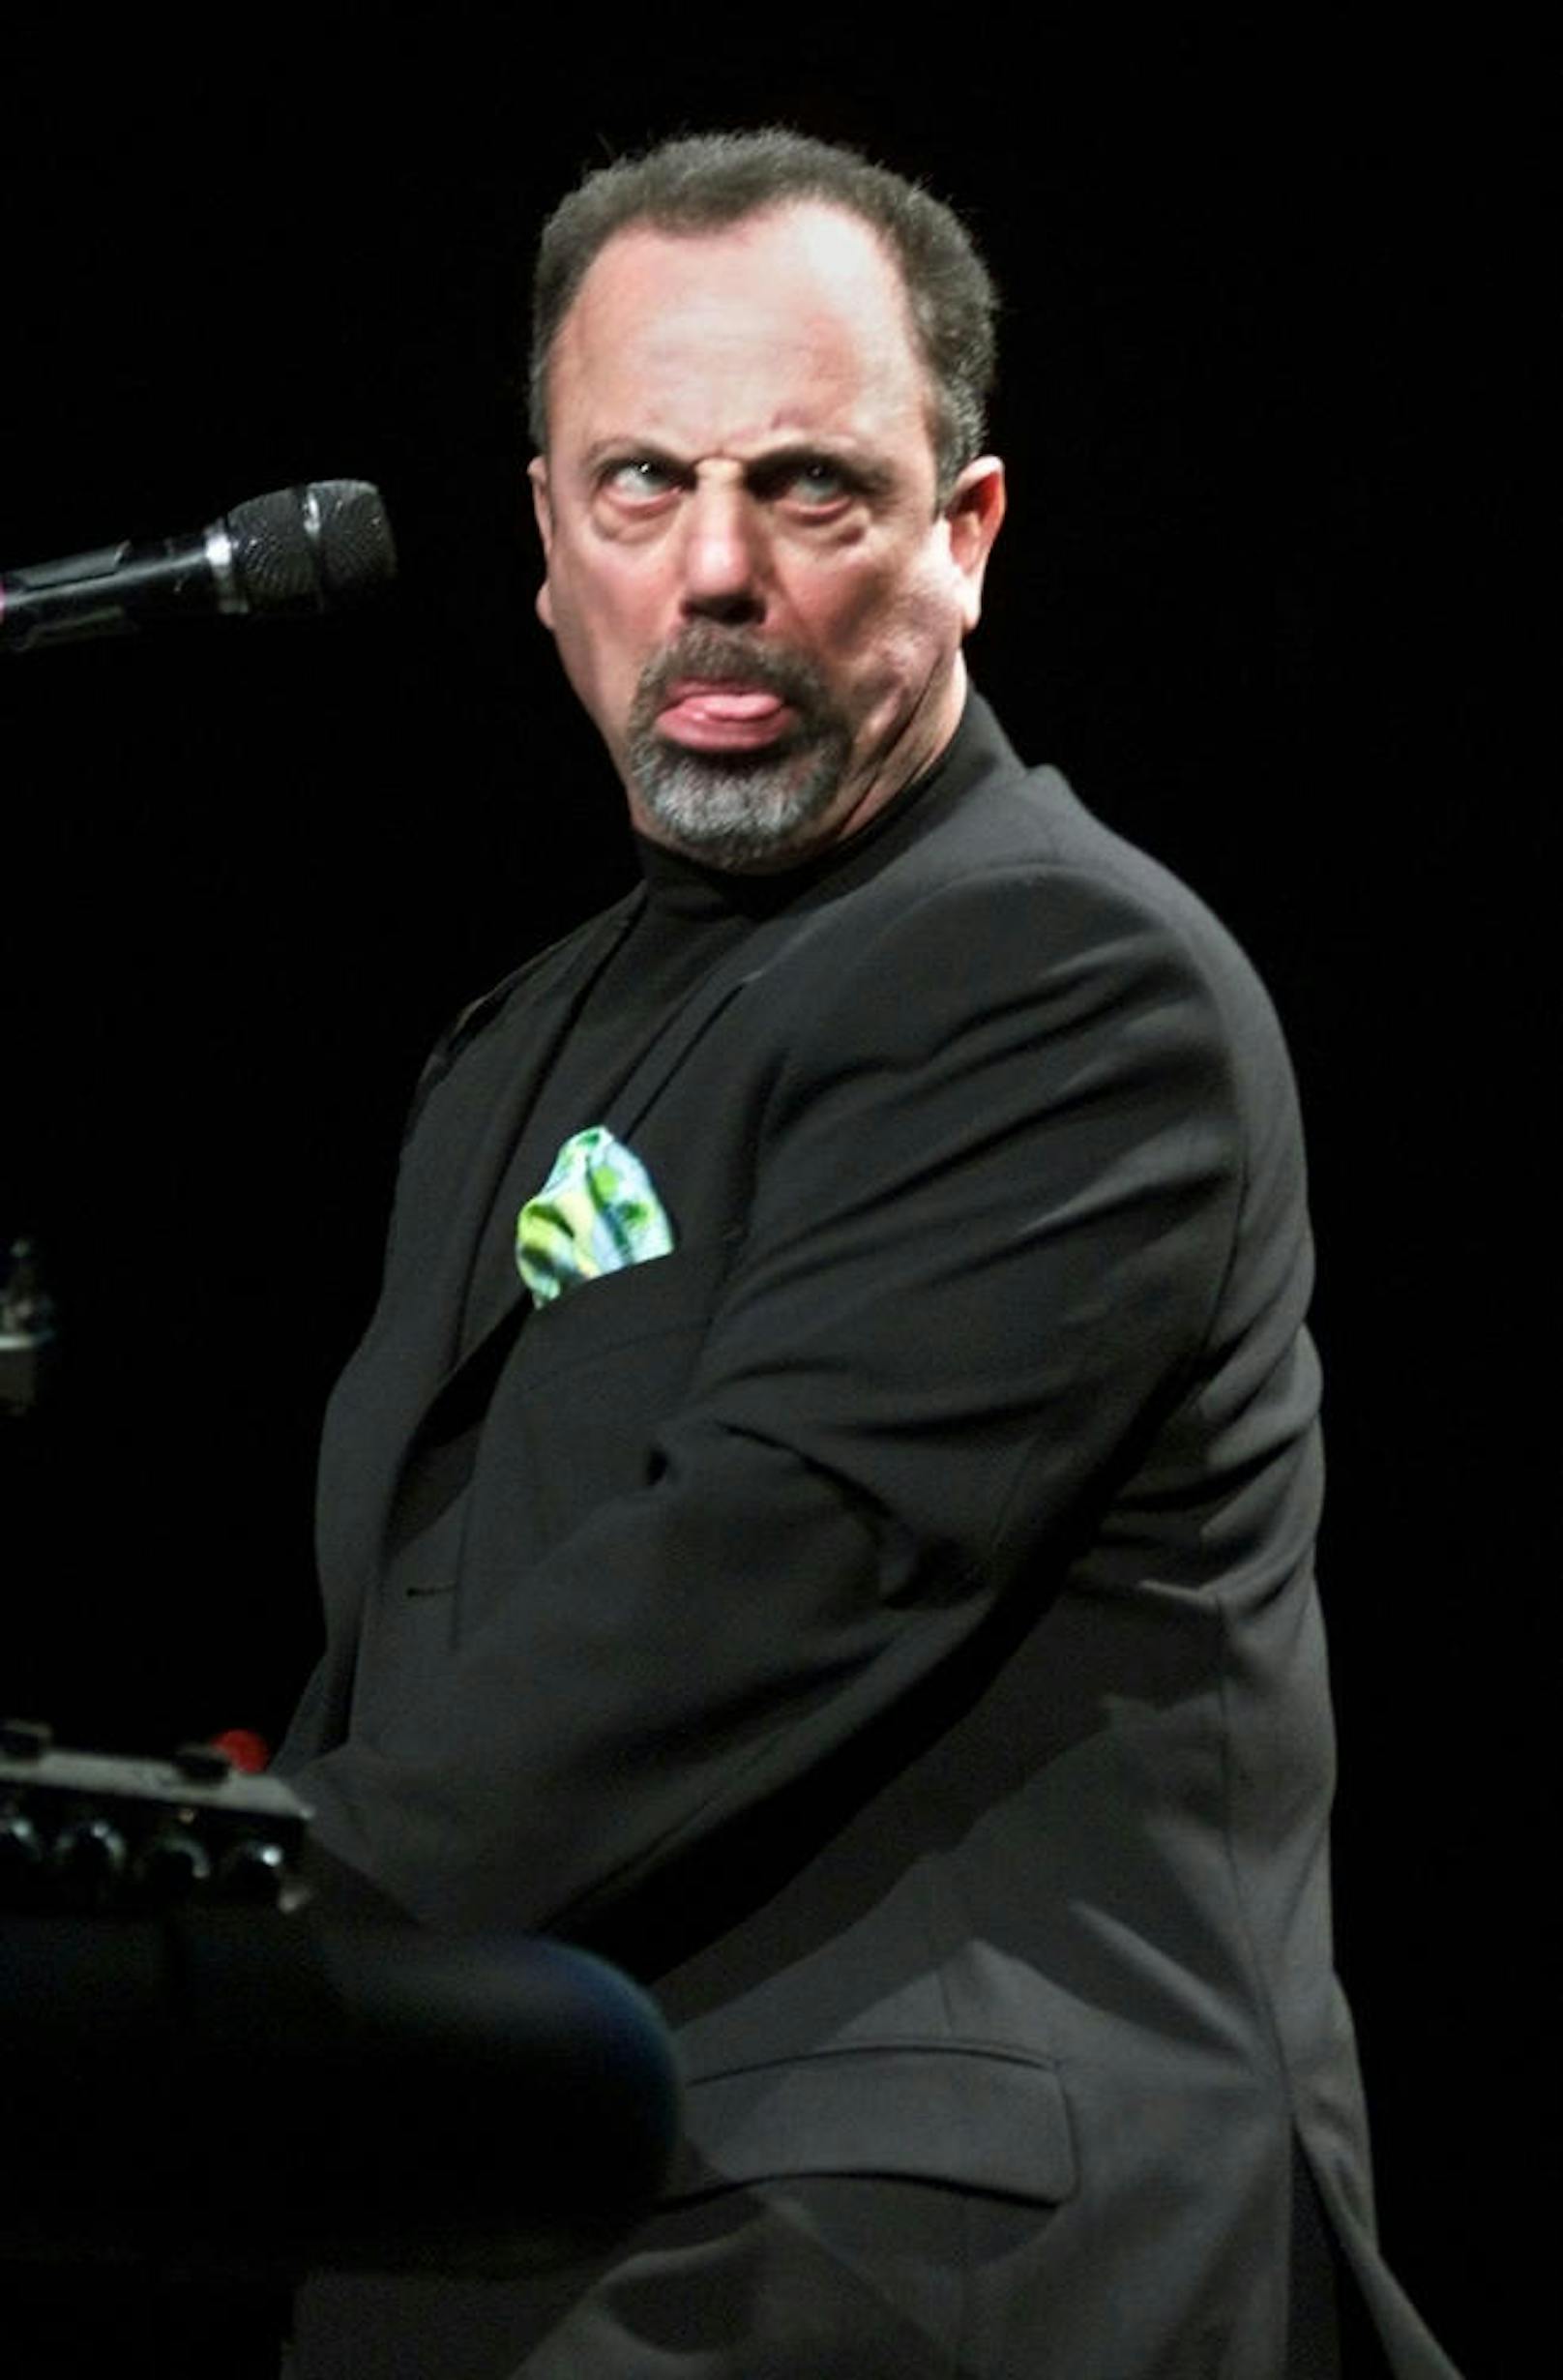 Billy Joel (performt hier gerade Elton Johns Song "Your Song" 2001 in Inglewood) soll im Madison Square Garden eingeschlafen sein. Er spielte gerade seinen Song "Piano Man".